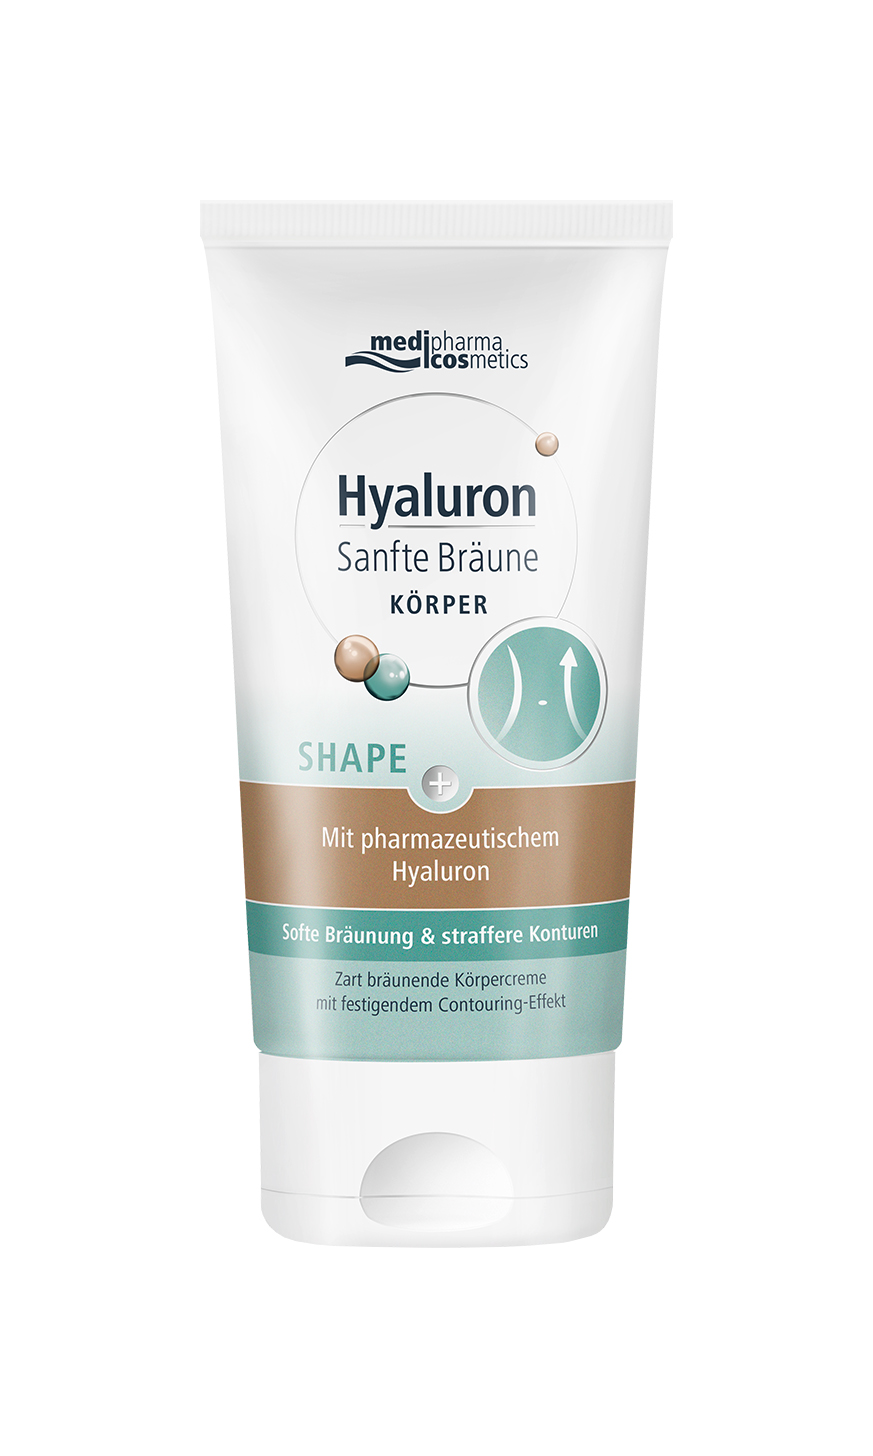 medipharma-cosmetics-Hyaluron-Sanfte-Braeune-Körper-SHAPE-Tube